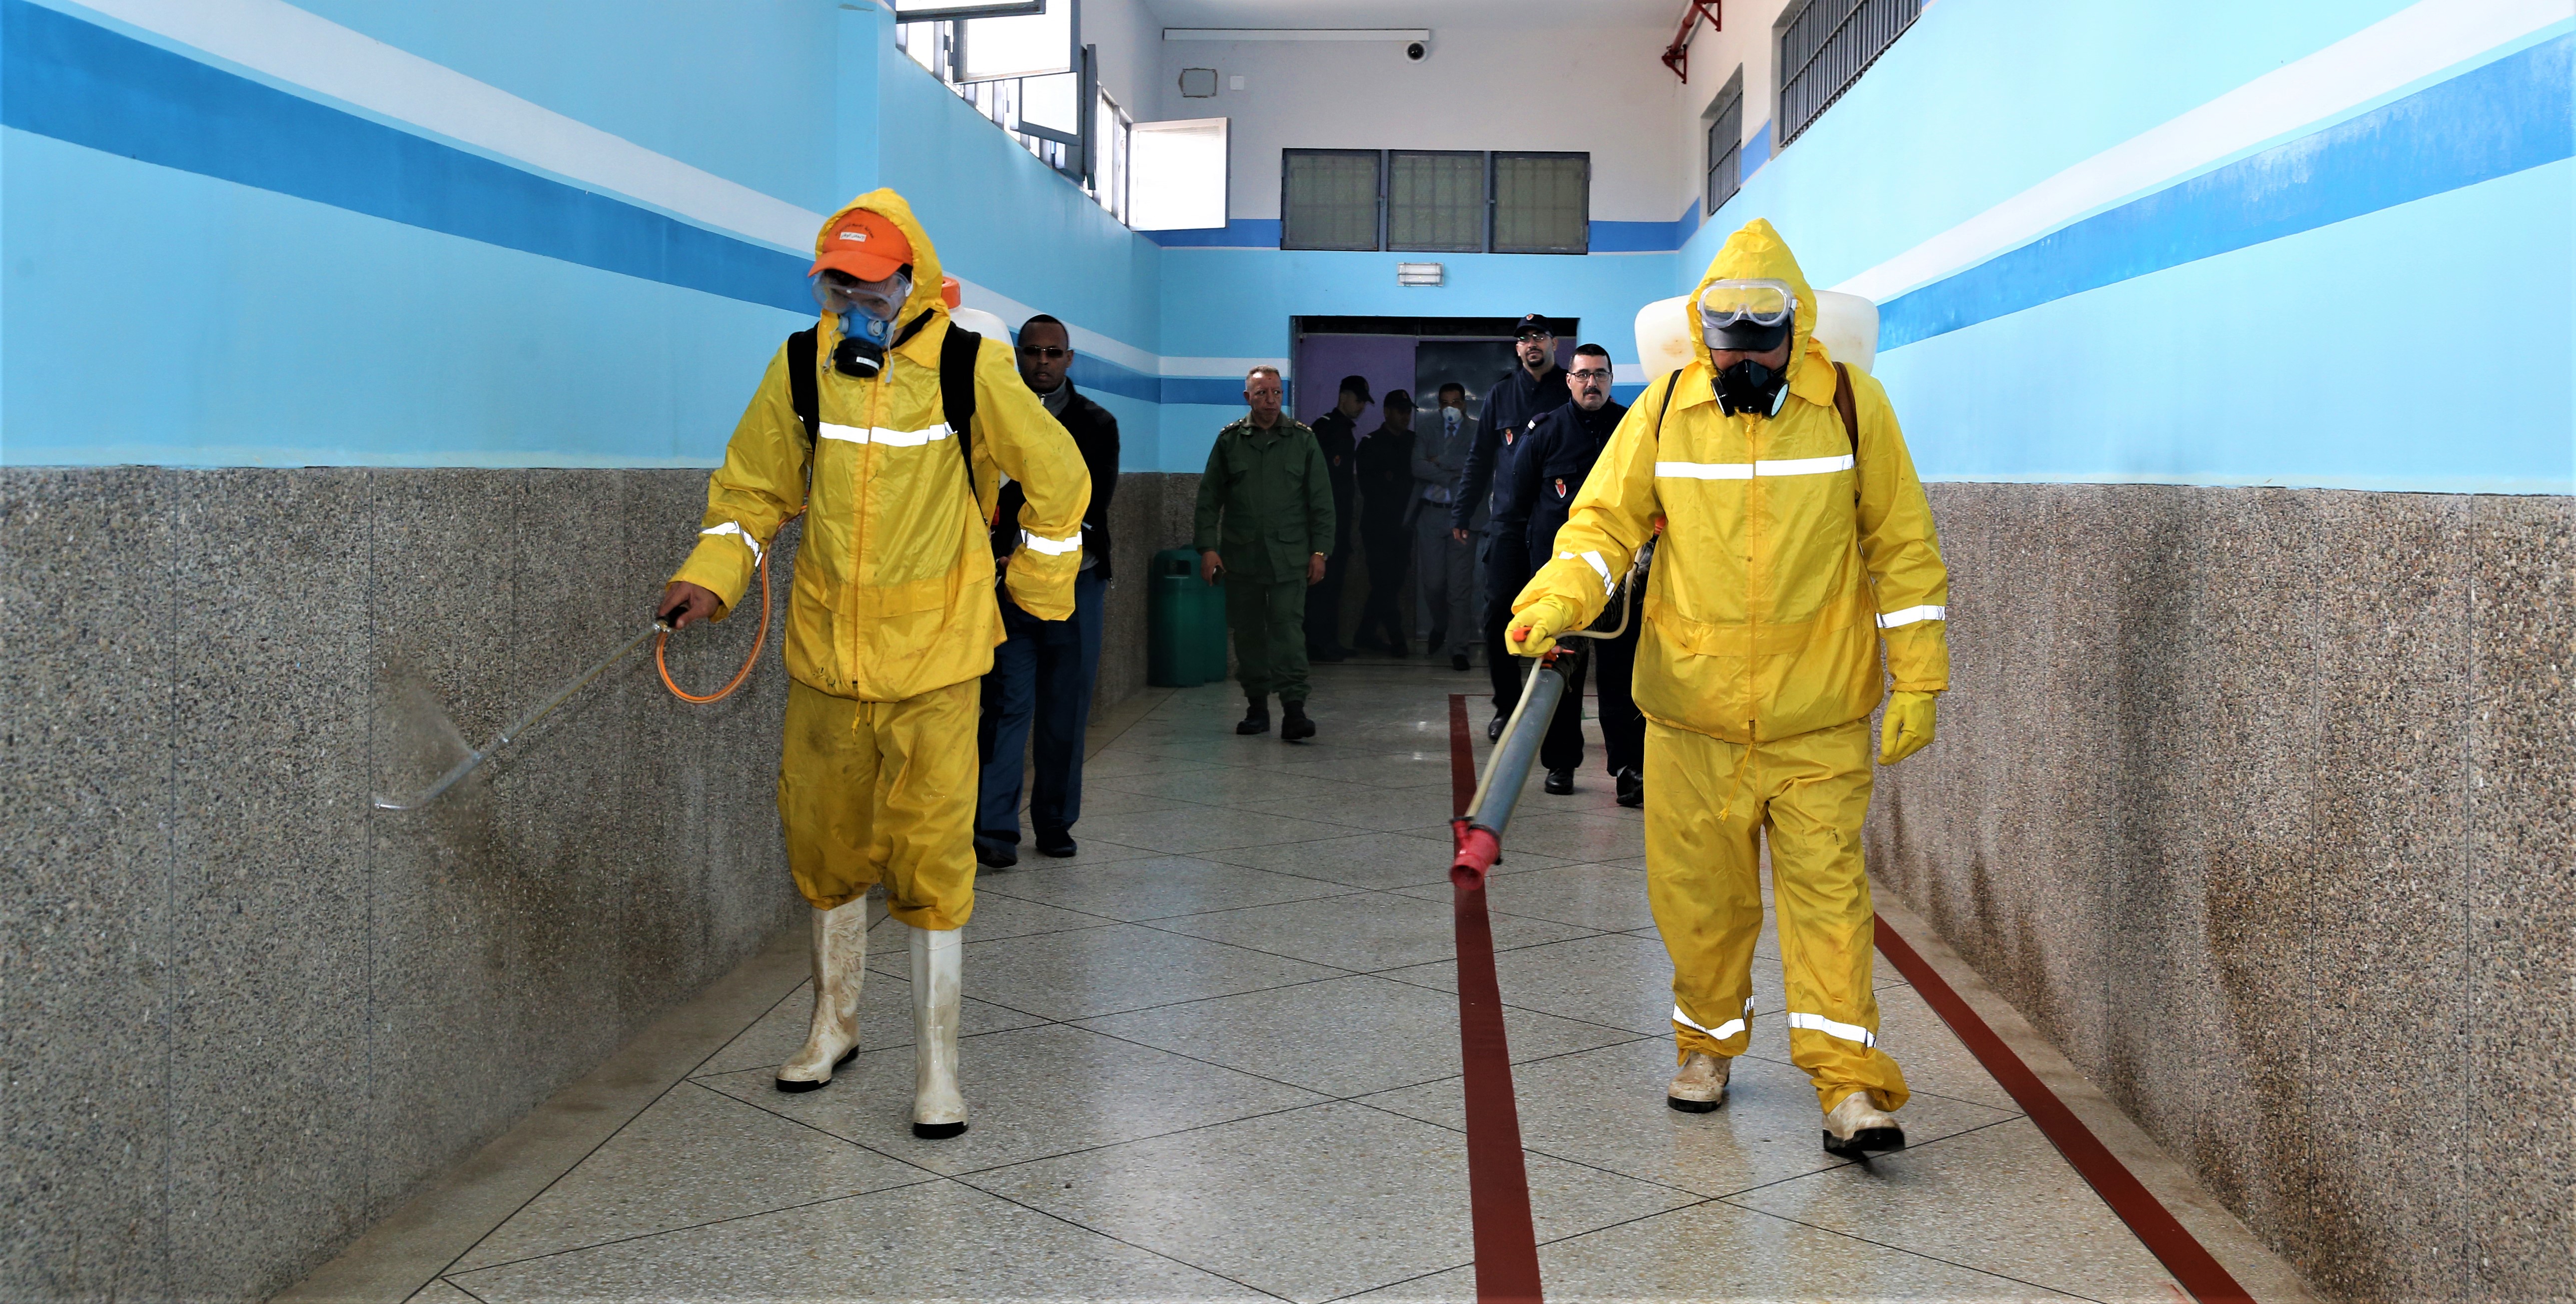 Opération de désinfection et de stérilisation de la prison locale de Taourirt dans le cades des mesures sanitaires préventives de lutte contre la propagation du nouveau coronavirus.